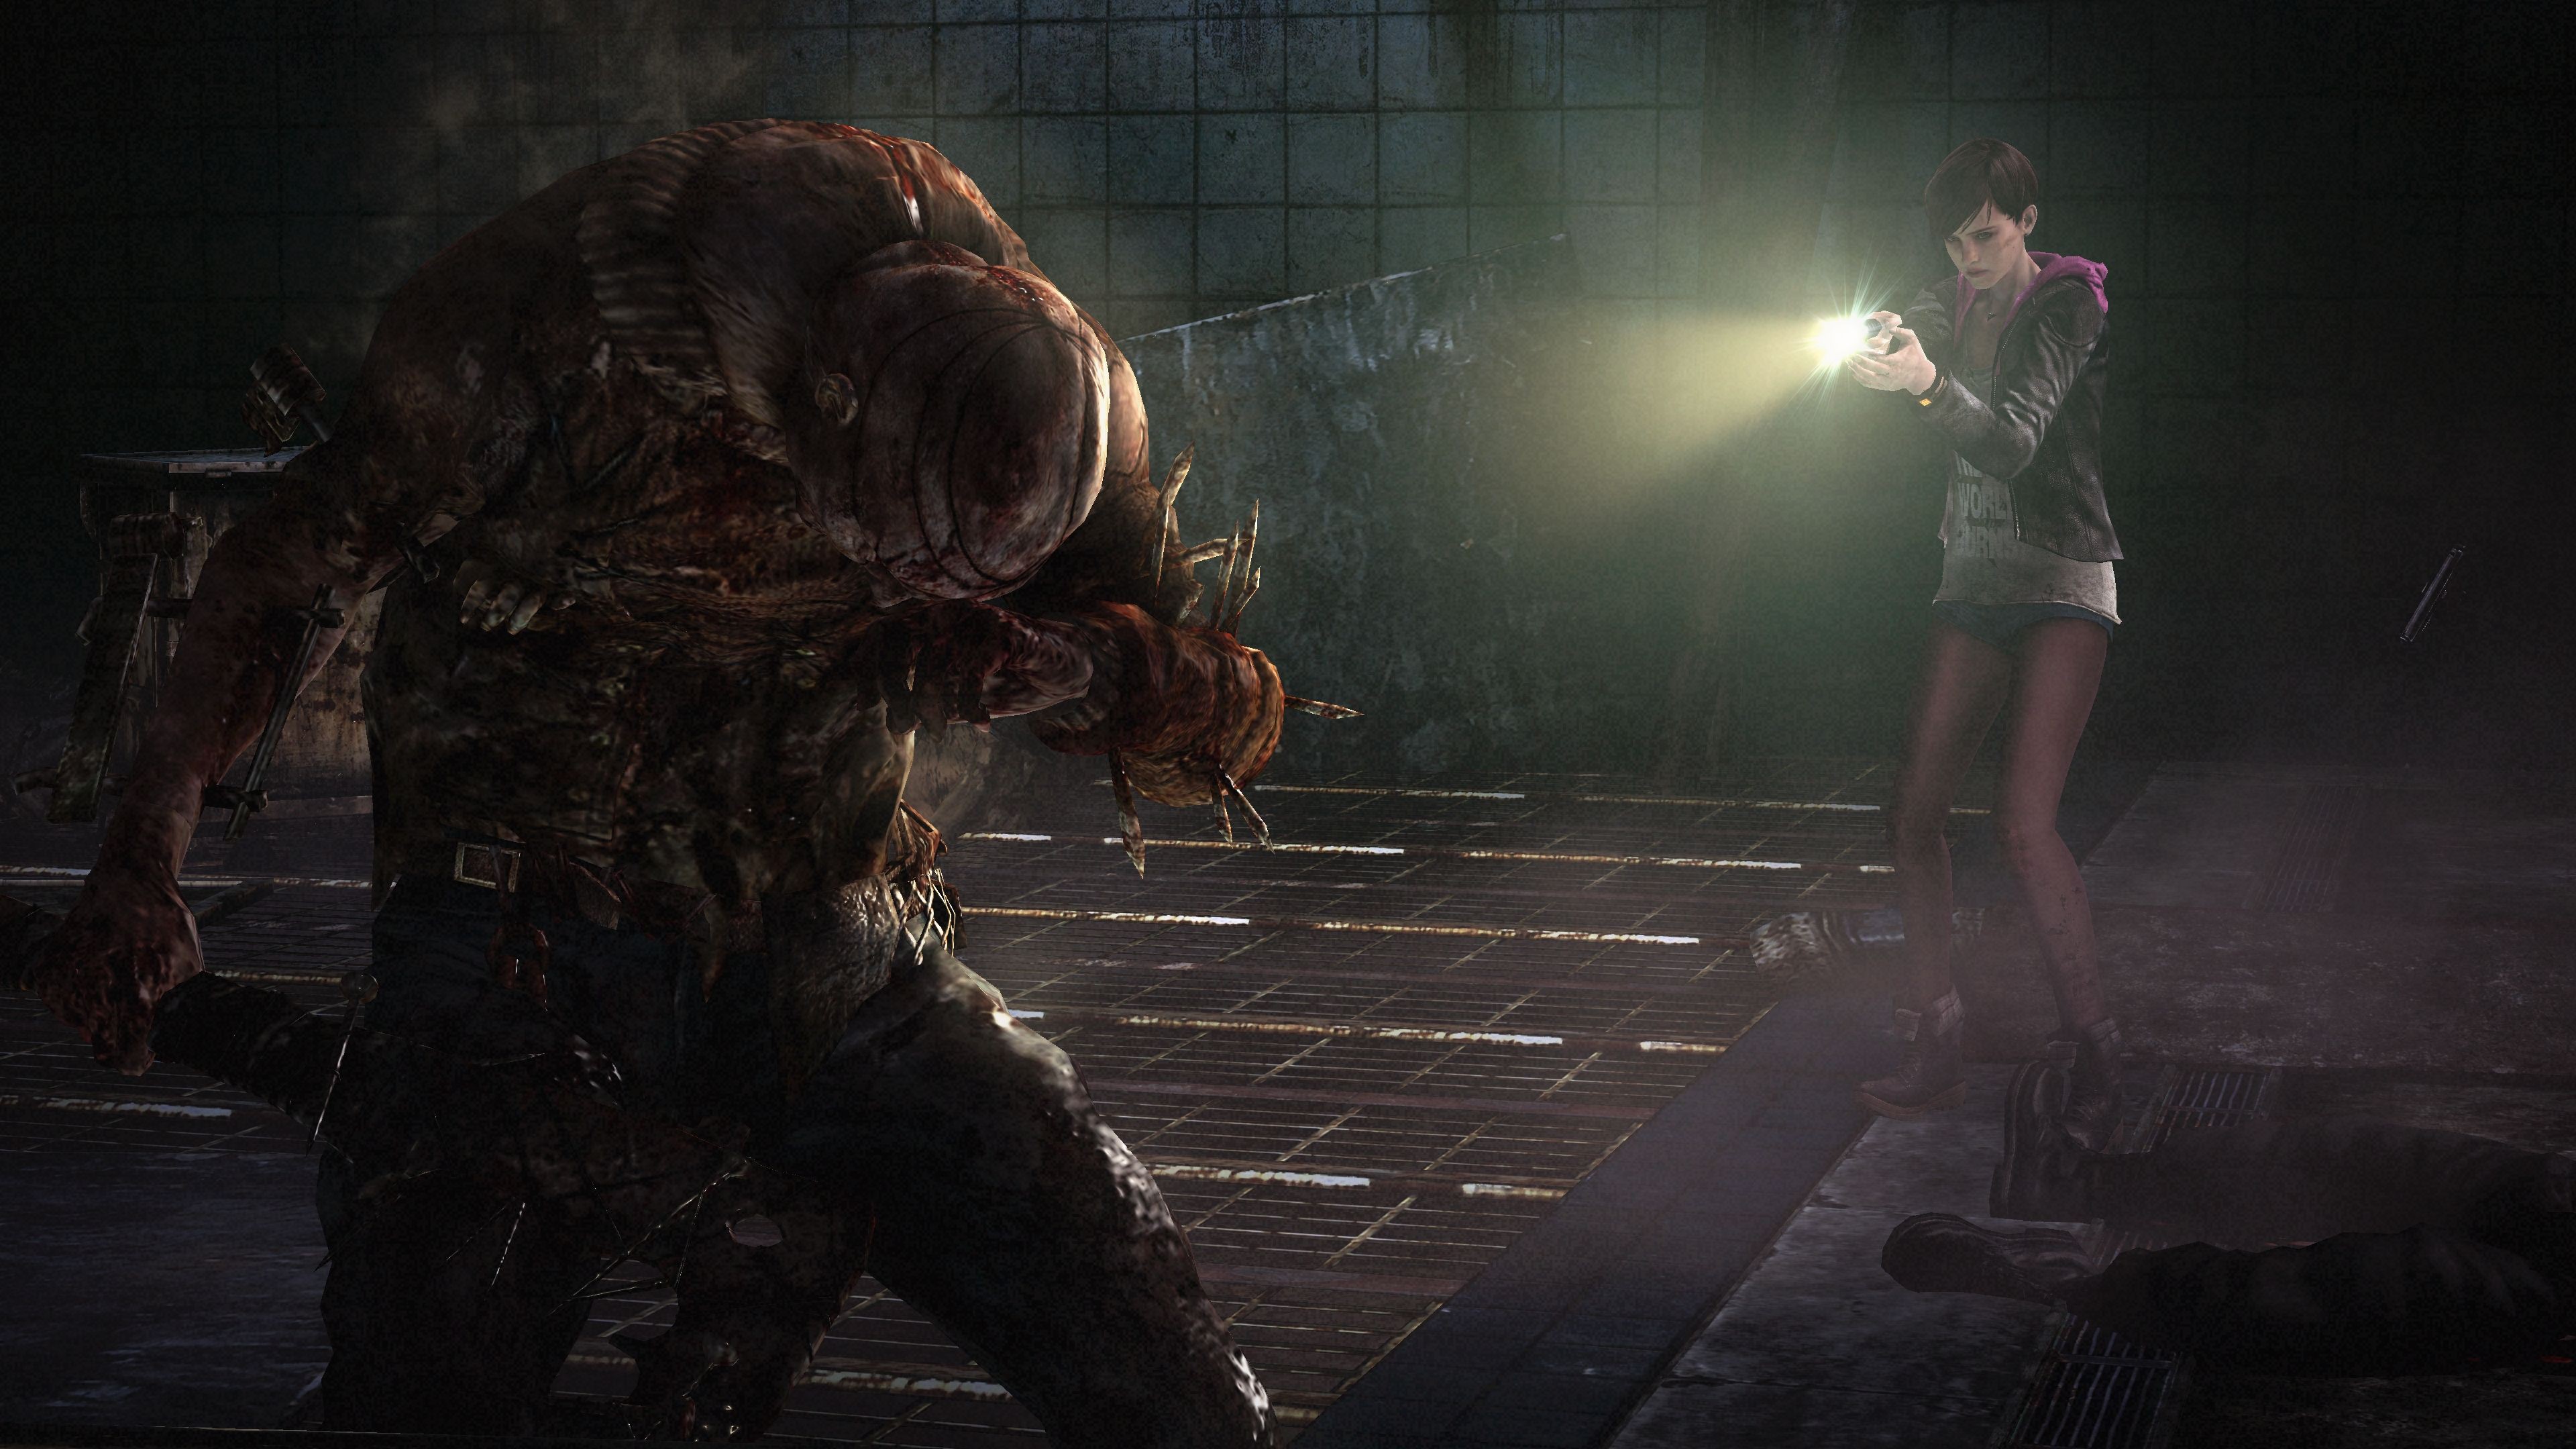 Save 75% on Resident Evil Revelations 2 on Steam